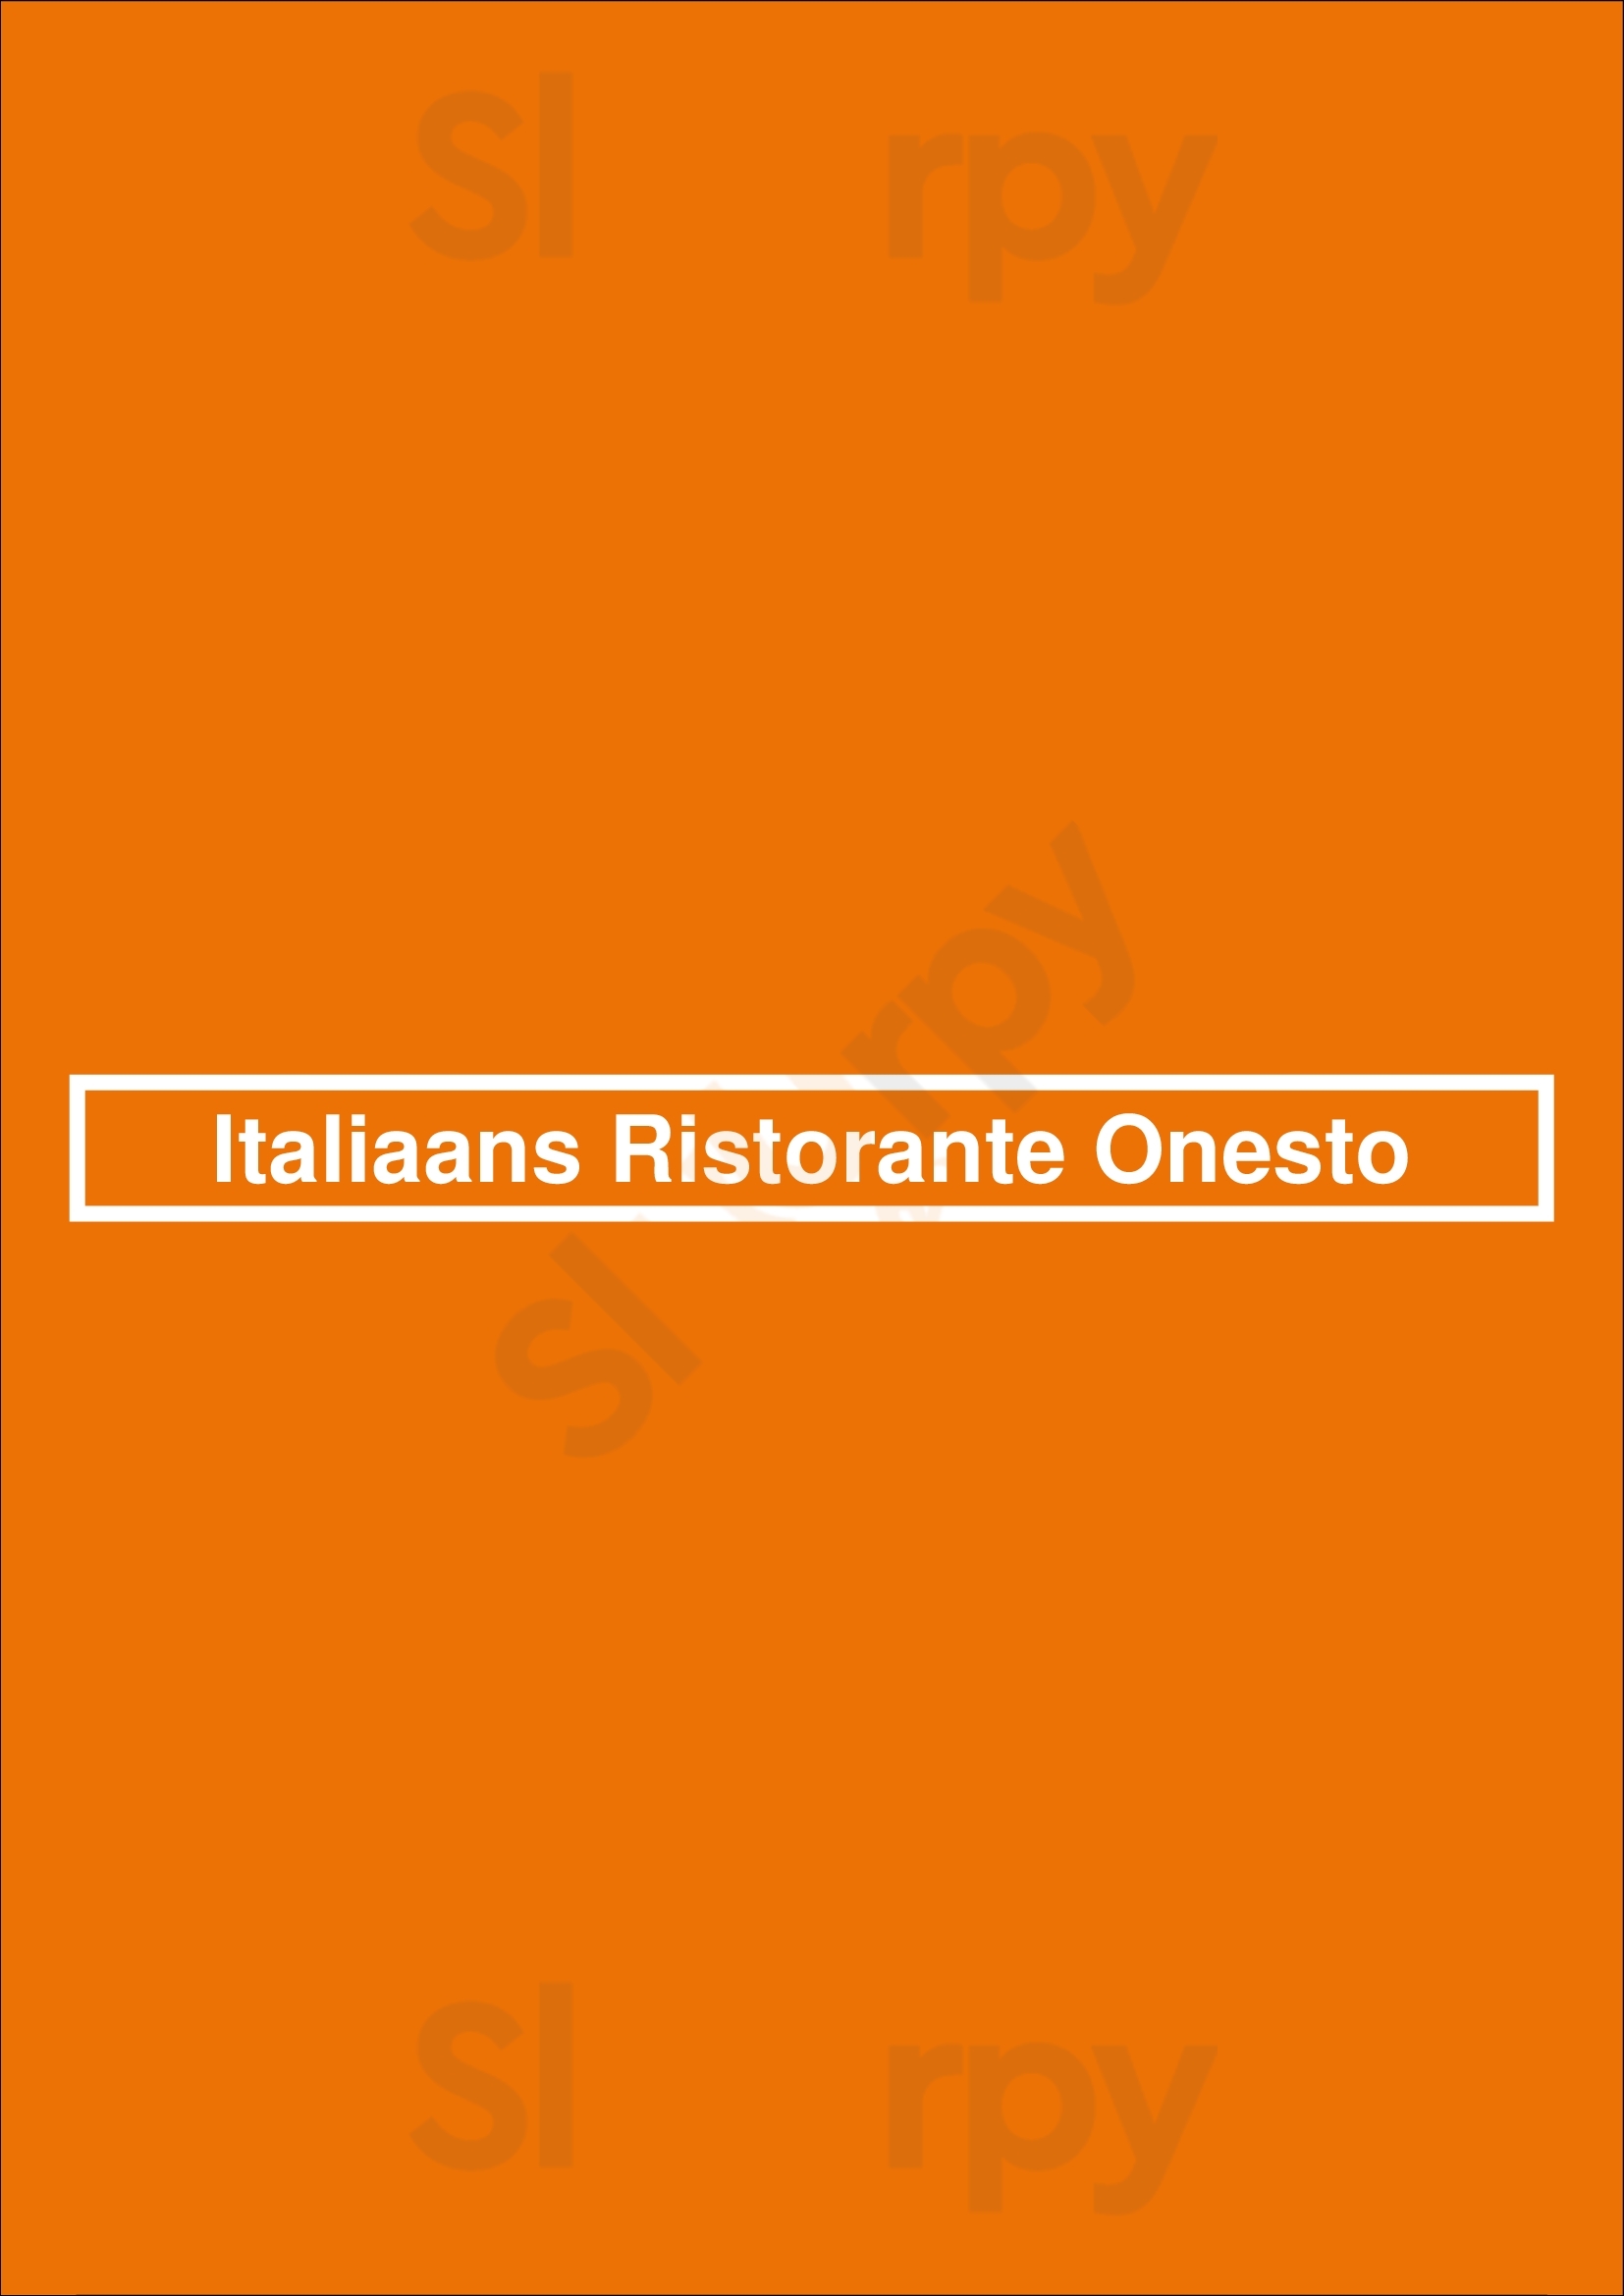 Italiaans Ristorante Onesto Den Bosch Menu - 1